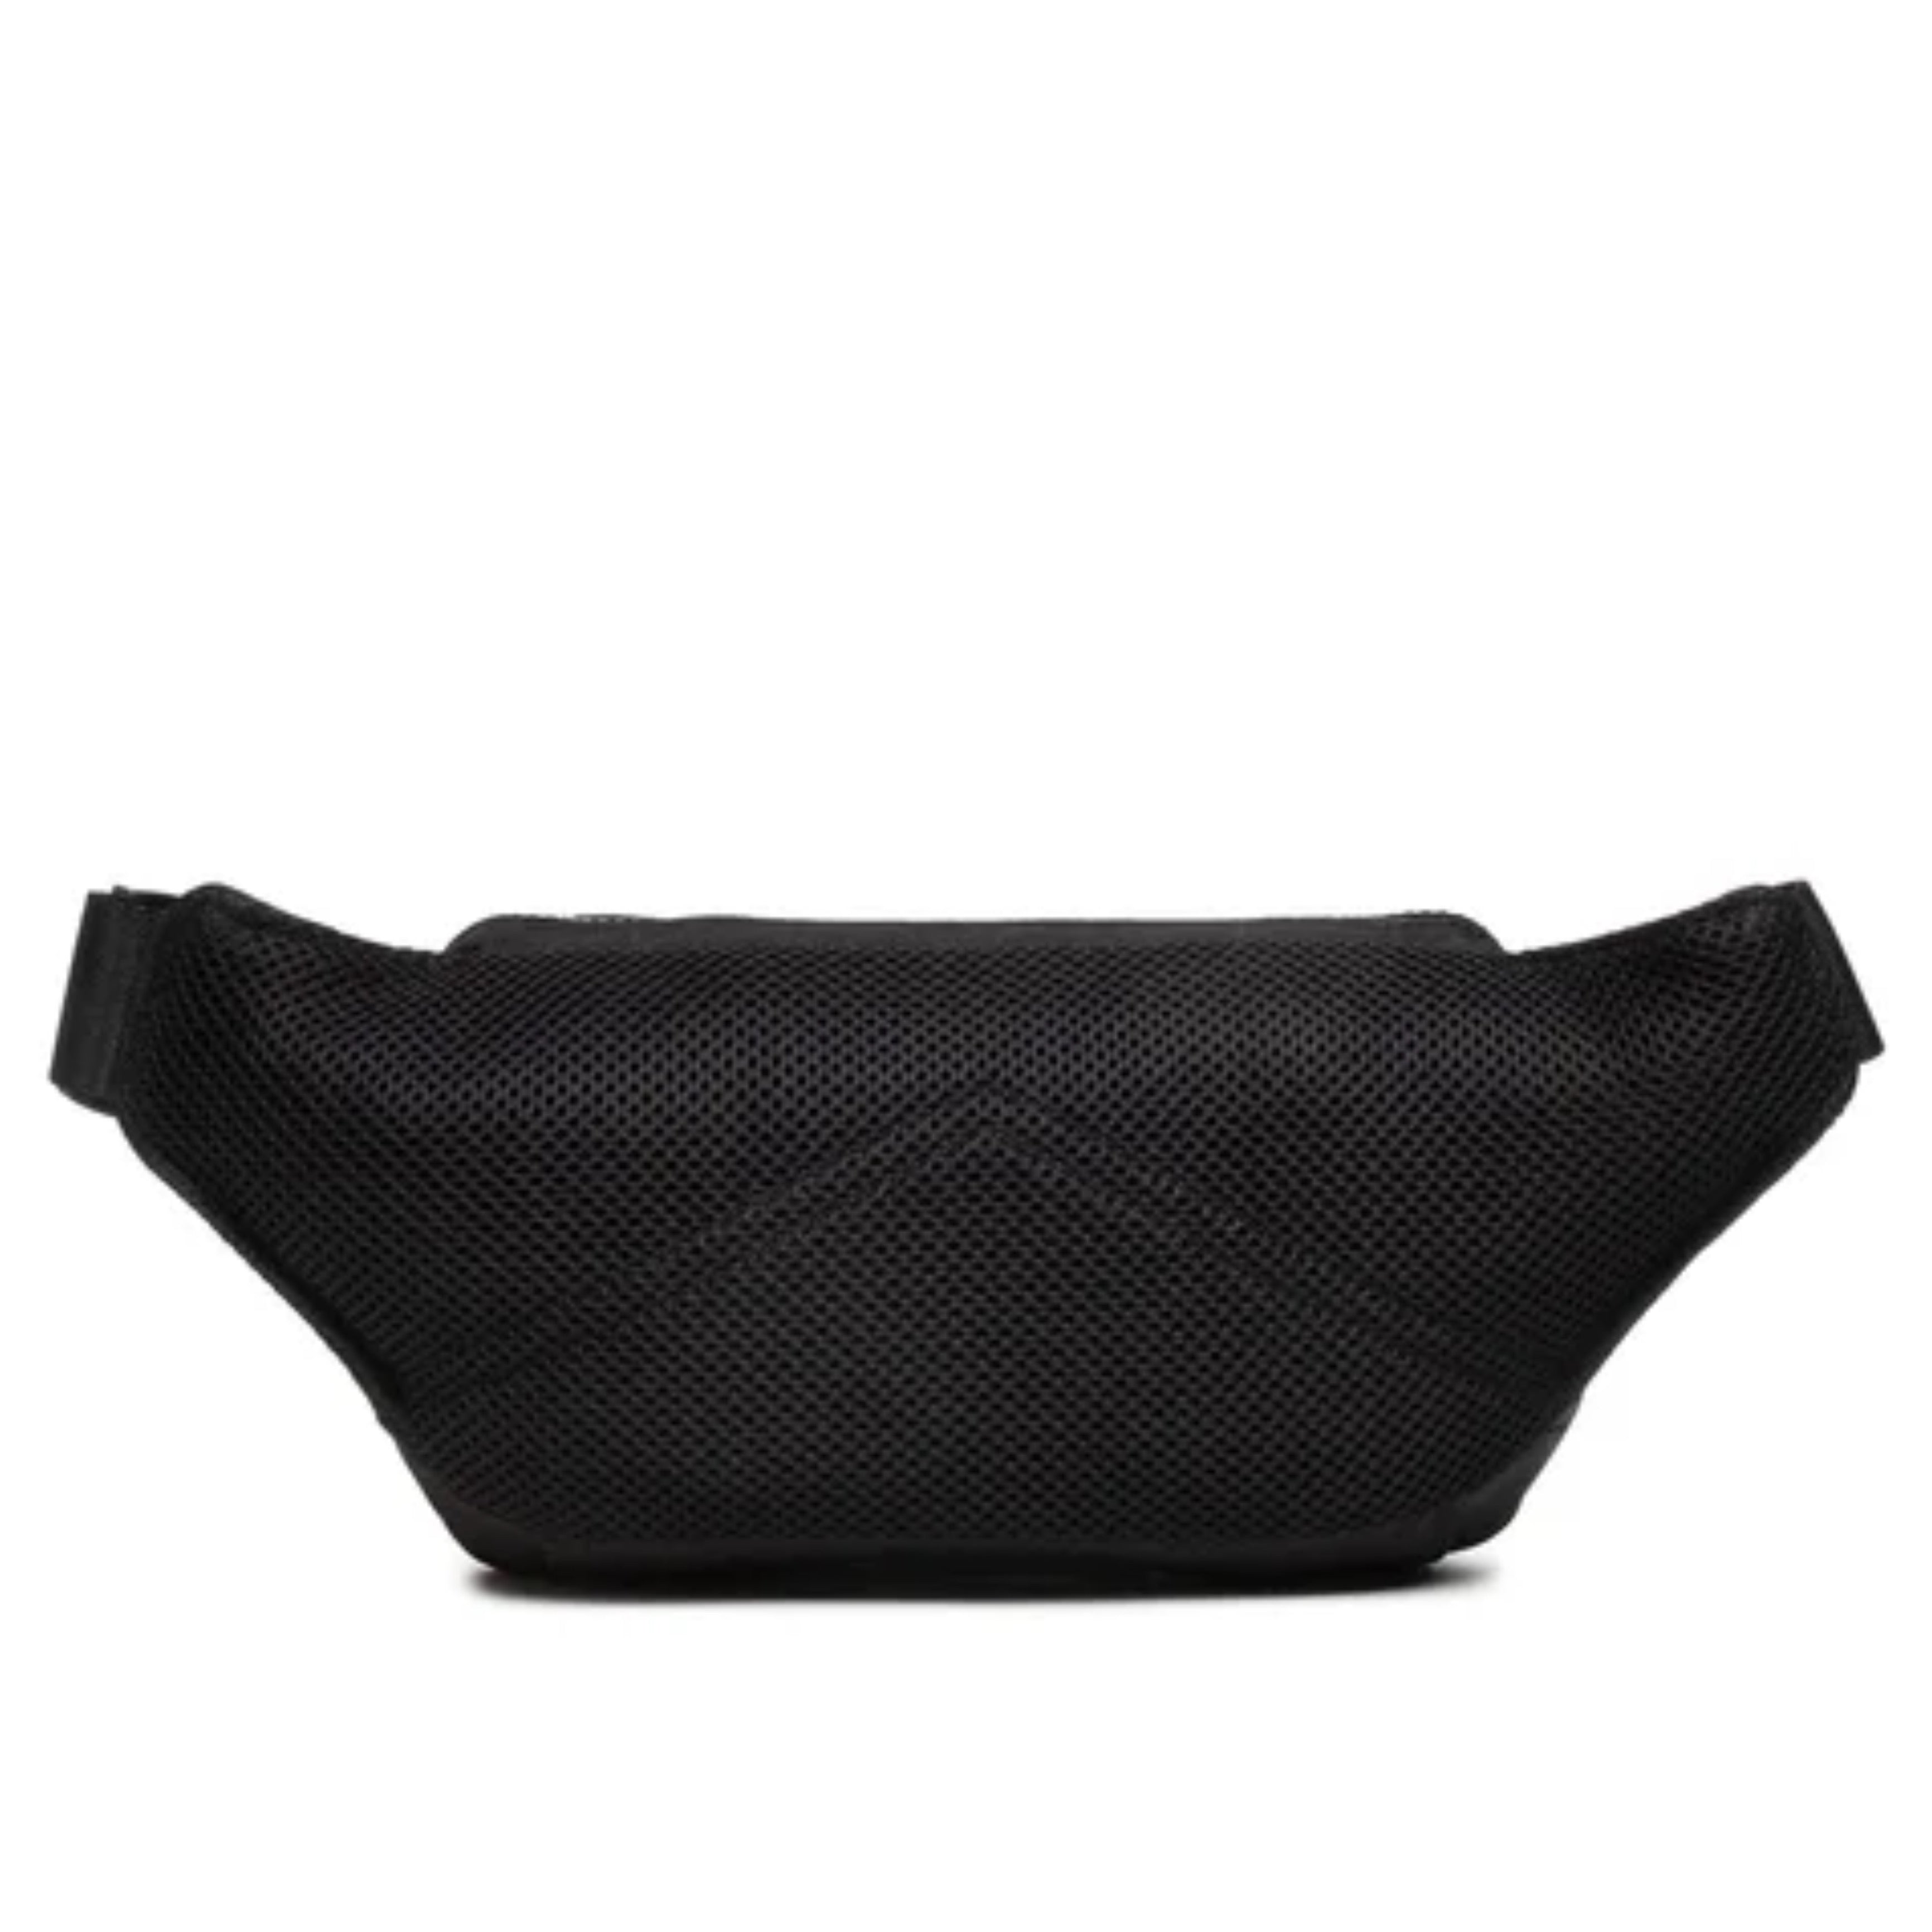 Calvin Klein waist bag